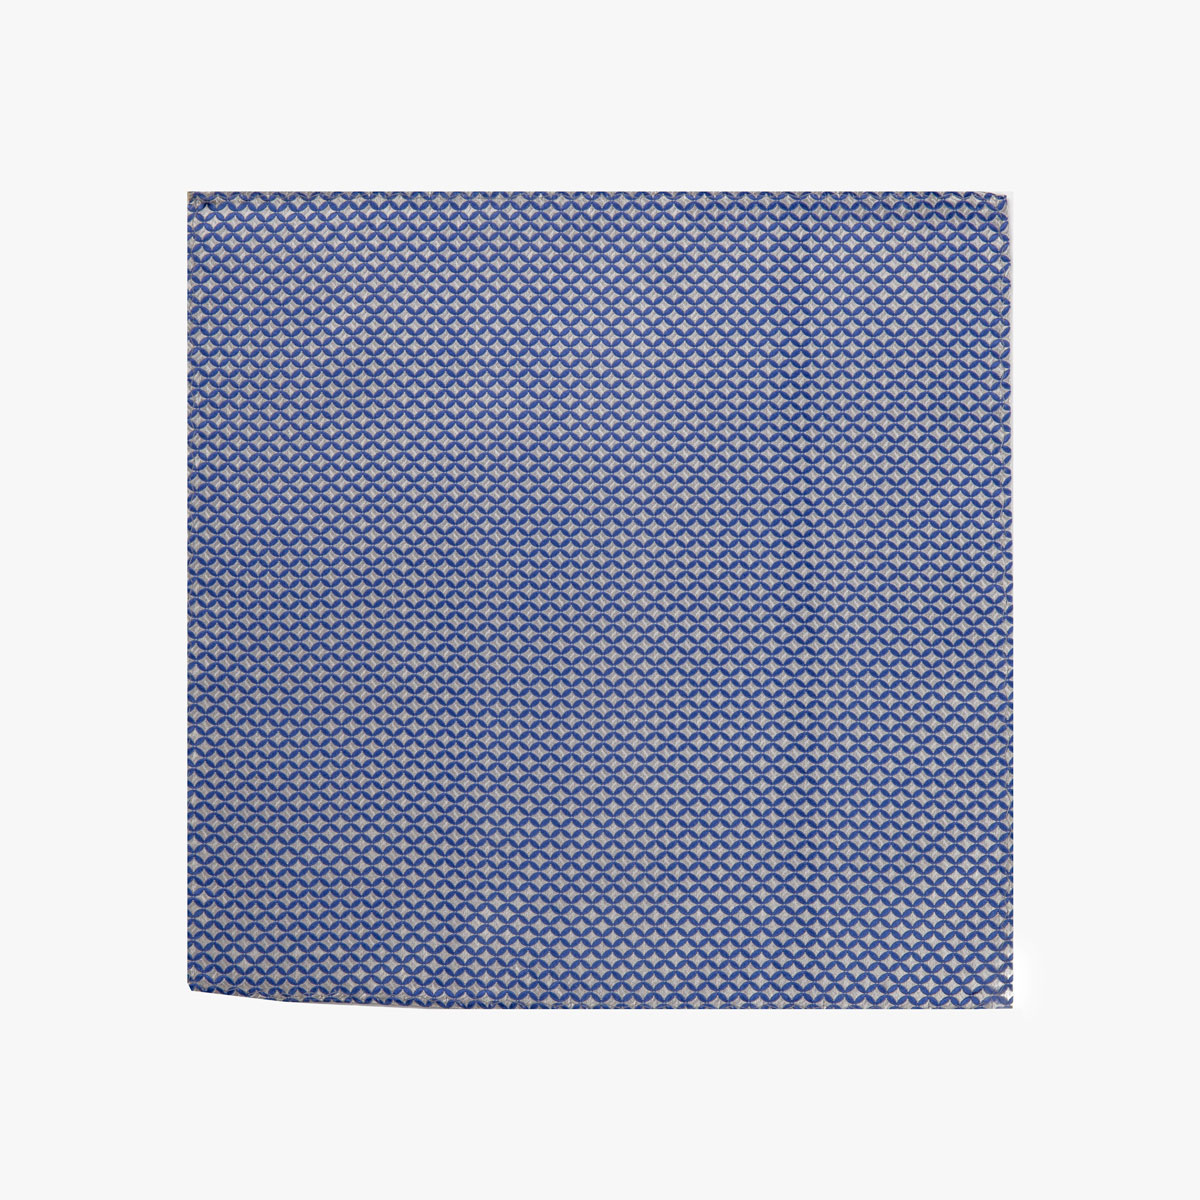 Stoff vom Einstecktuch mit geometrischem Muster in hellblau grau 